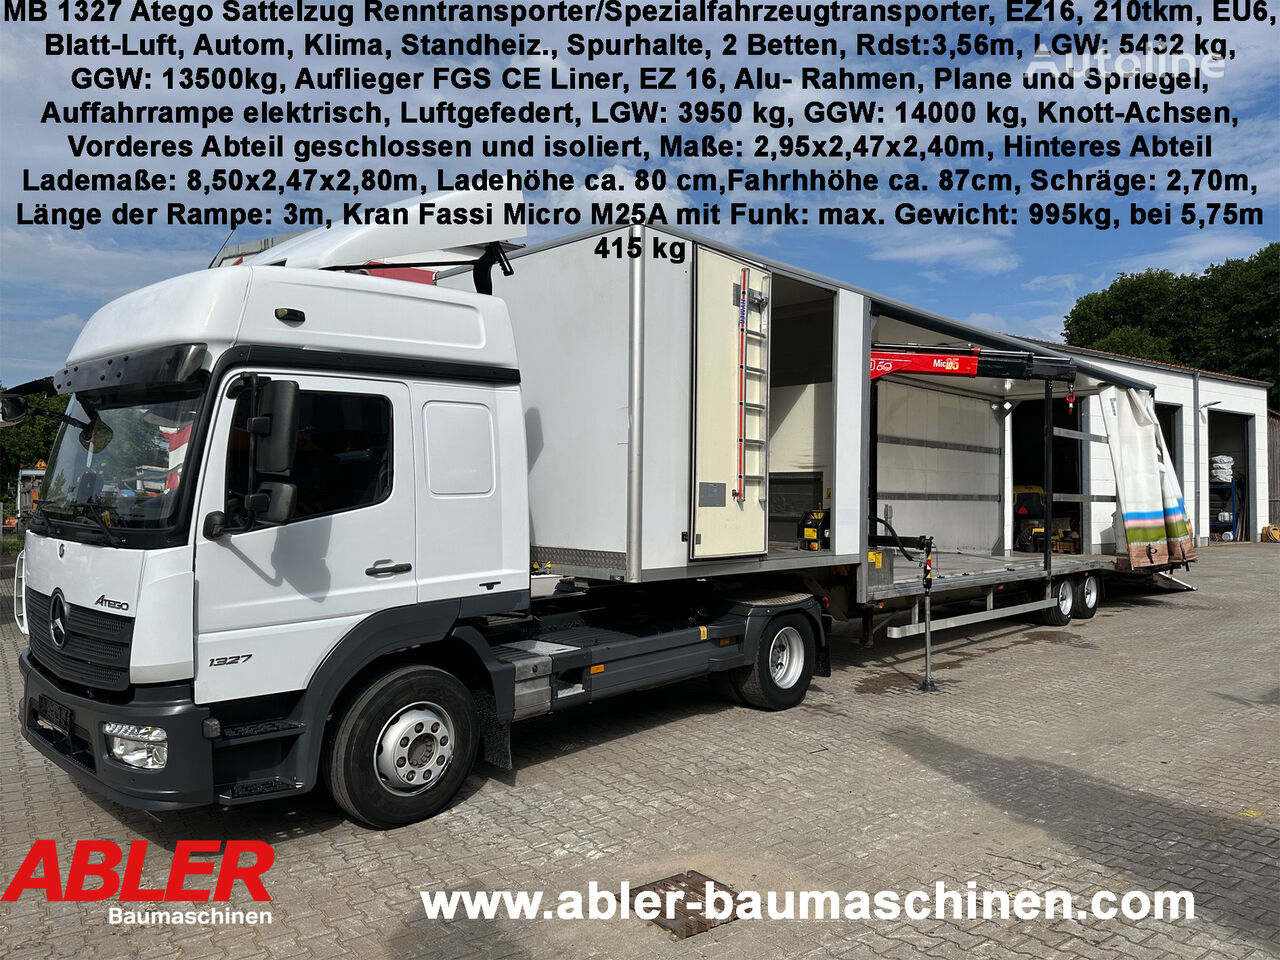 Mercedes-Benz 1327 Atego Renntransporter Spezialfahrzeugtransporter geschlosse truck tractor + car transporter semi-trailer